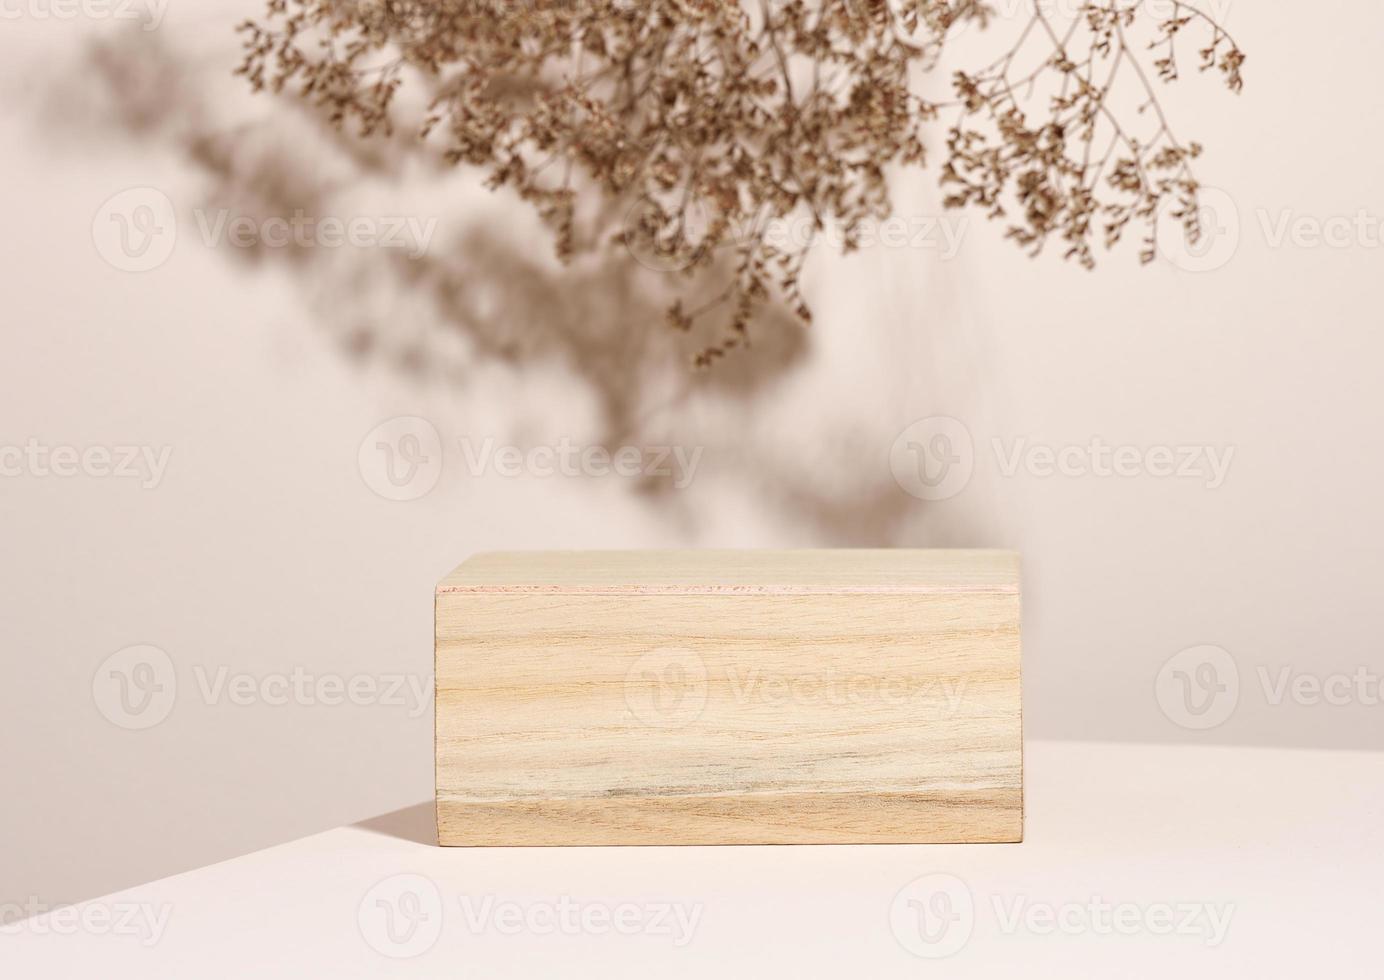 pódio de madeira para mostrar cosméticos e outros itens, fundo bege com flores silvestres secas e sombra foto